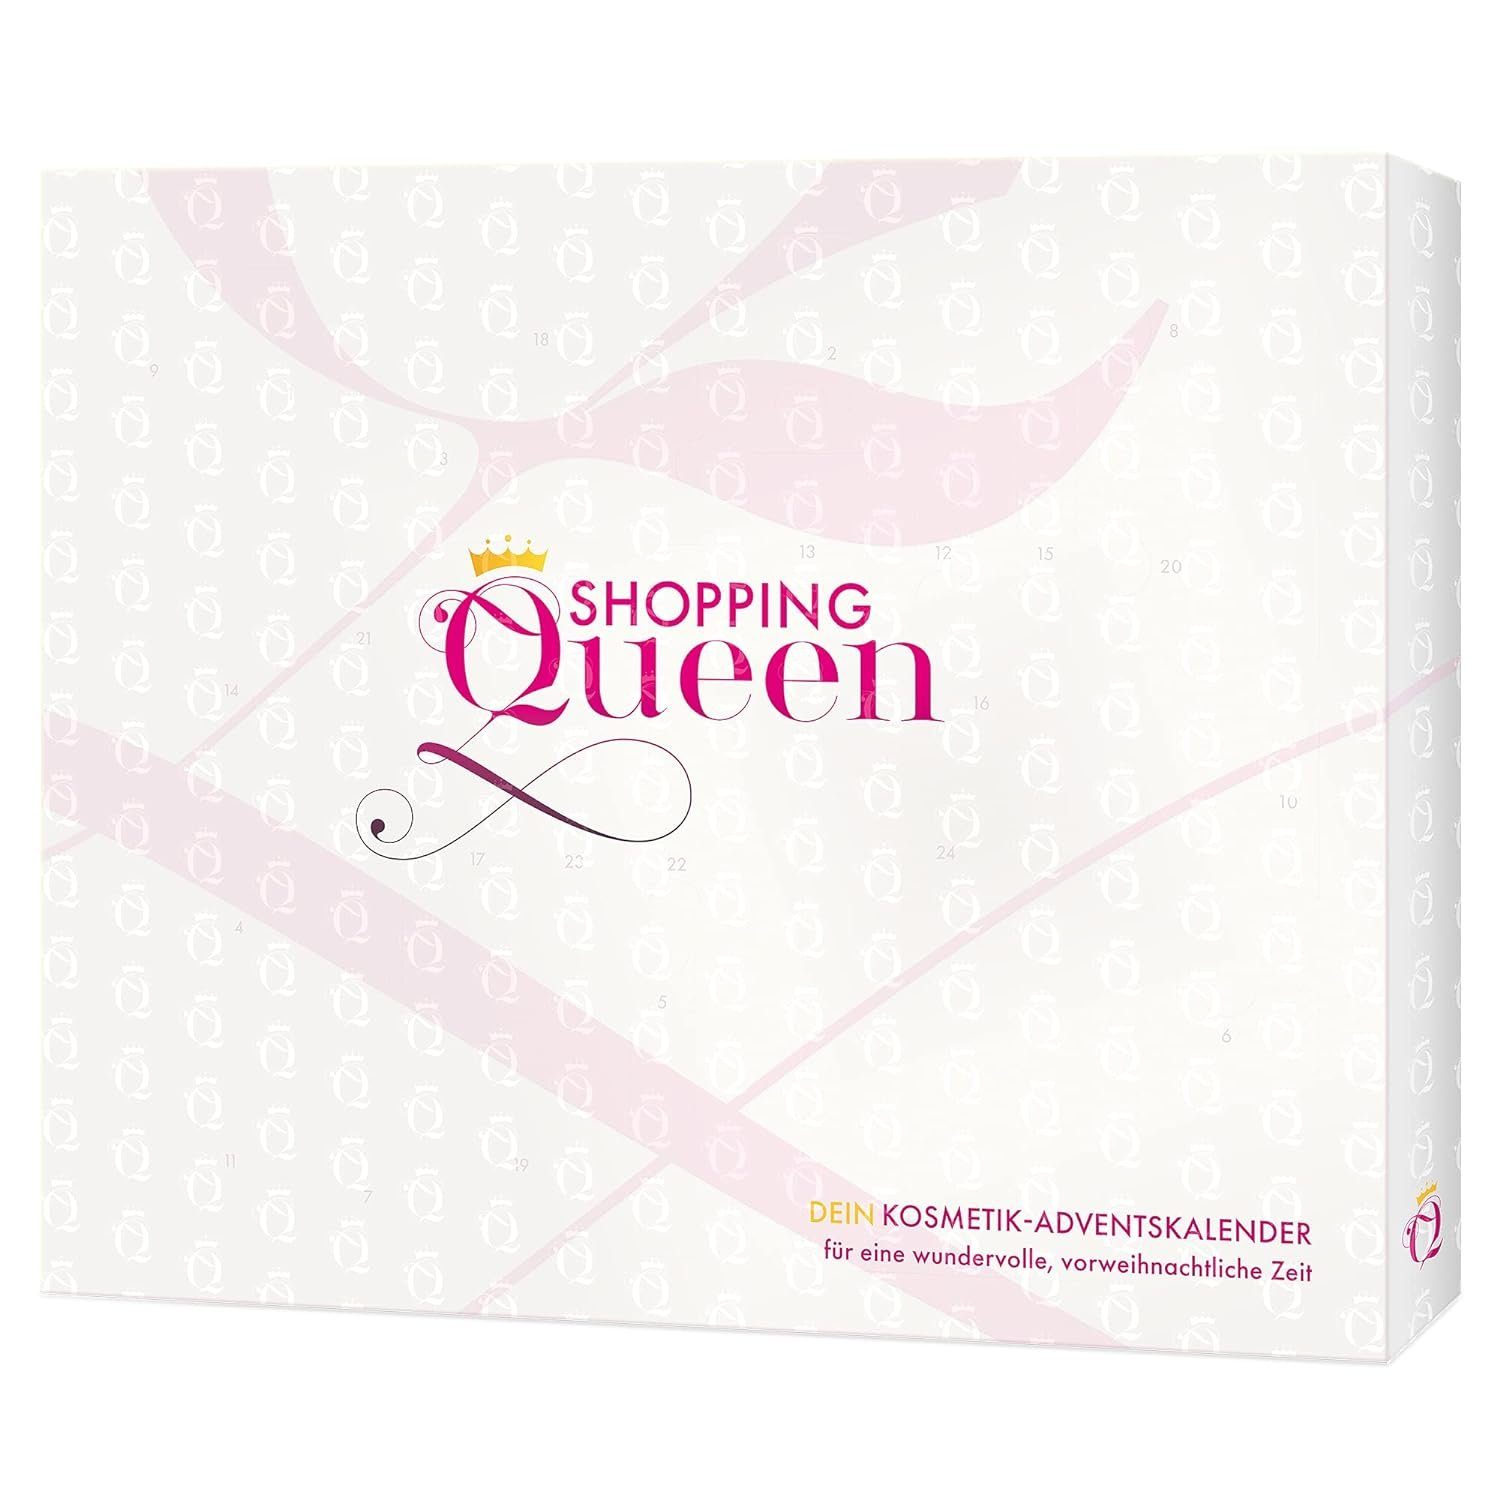 Shopping Queen Adventskalender Shopping - Kosmetik-Adventskalender Dein Queen